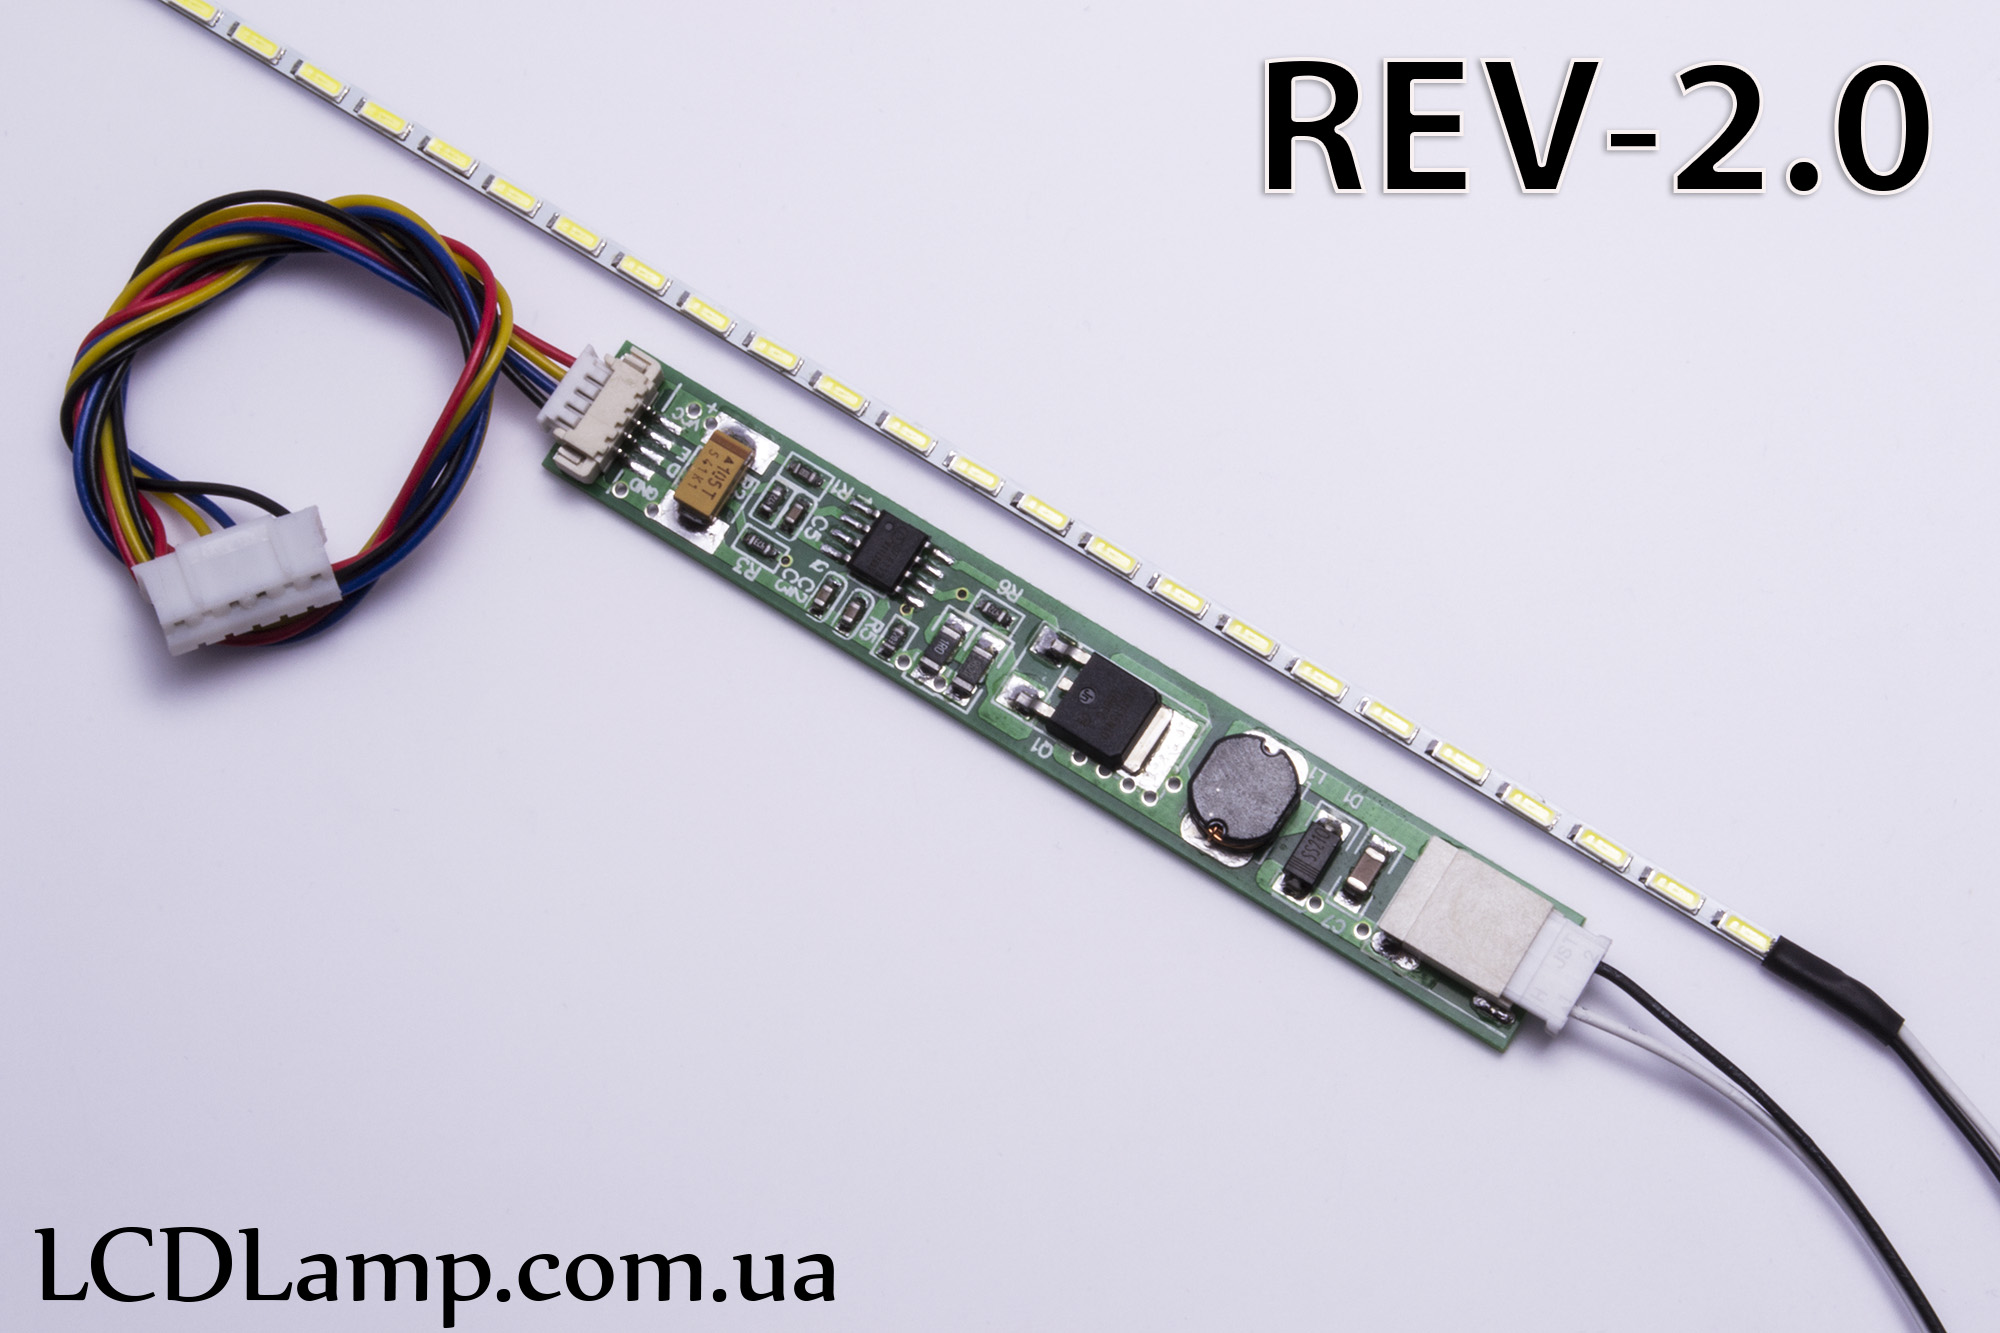 LED набор для ноутбука Rev-2.0 (350мм.)